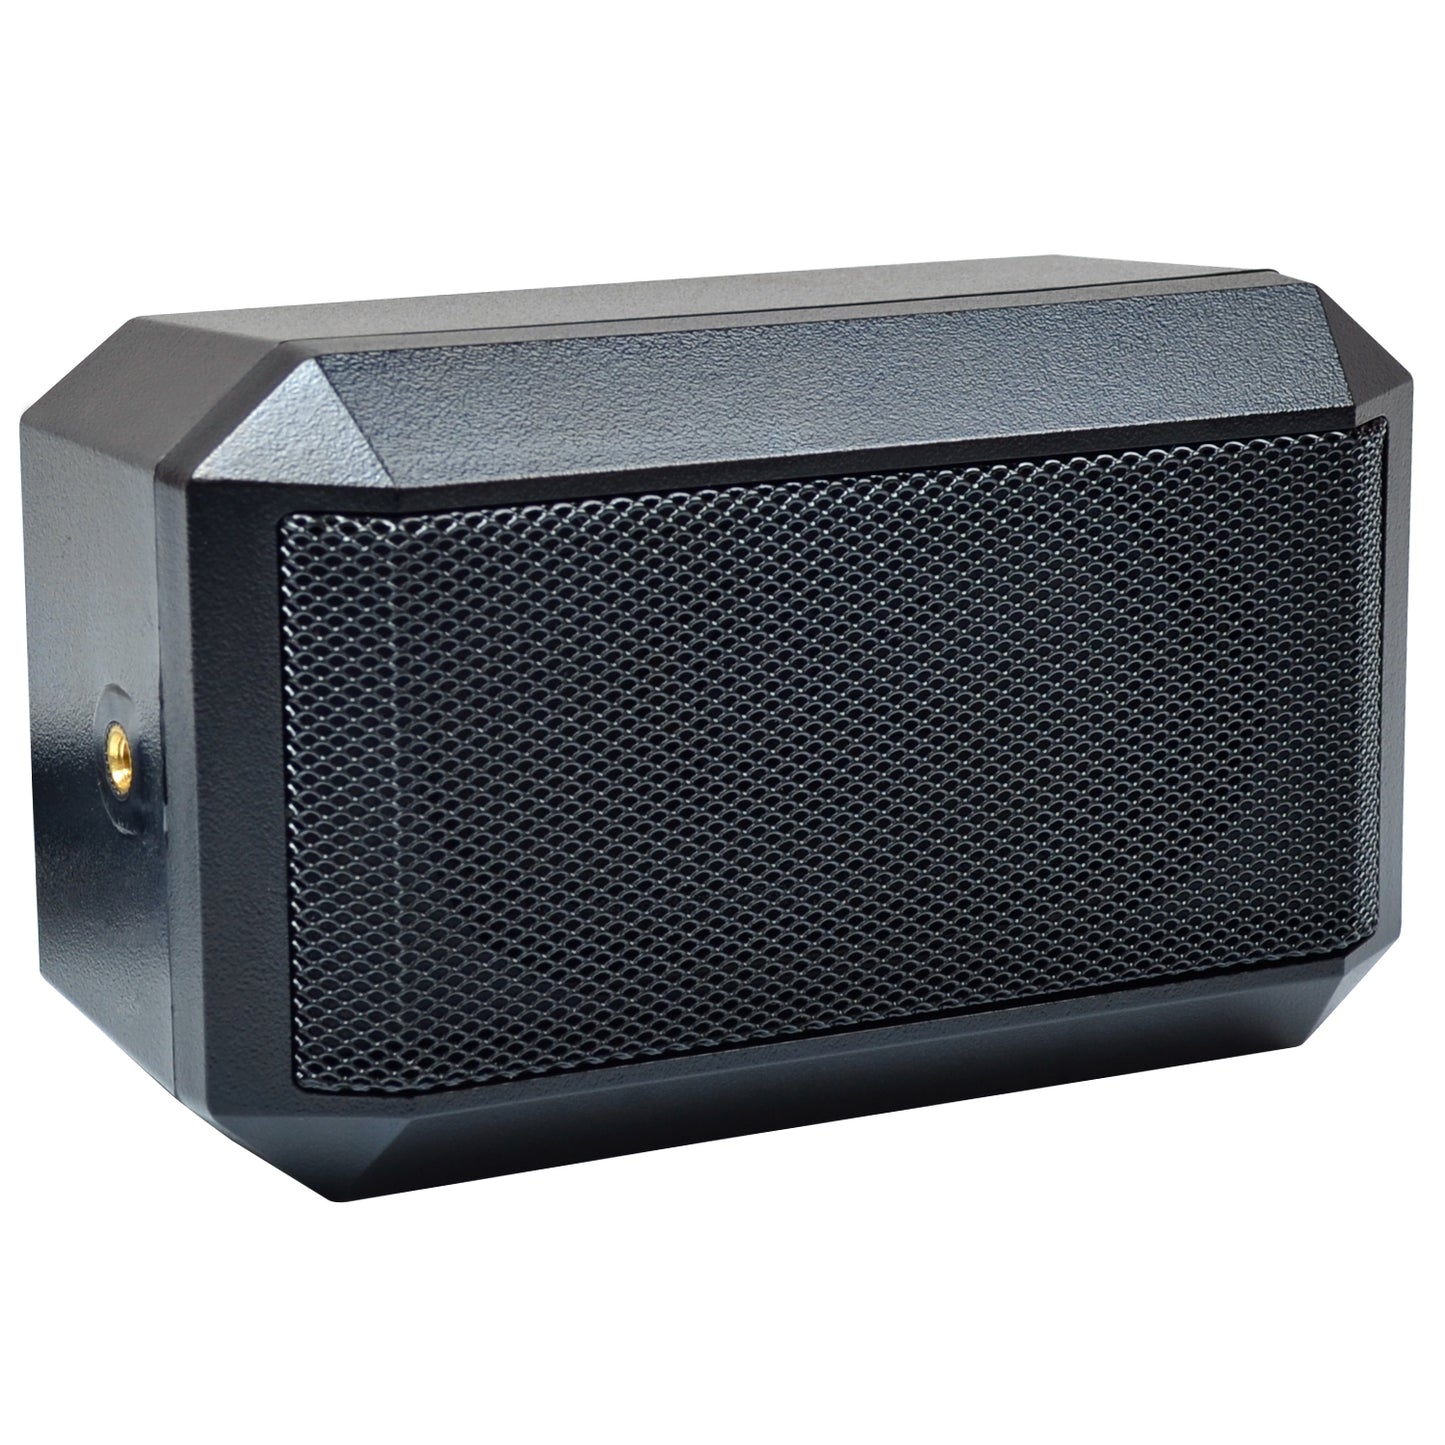 External Radio Scanner Speaker - 3.5" - Whistler Group